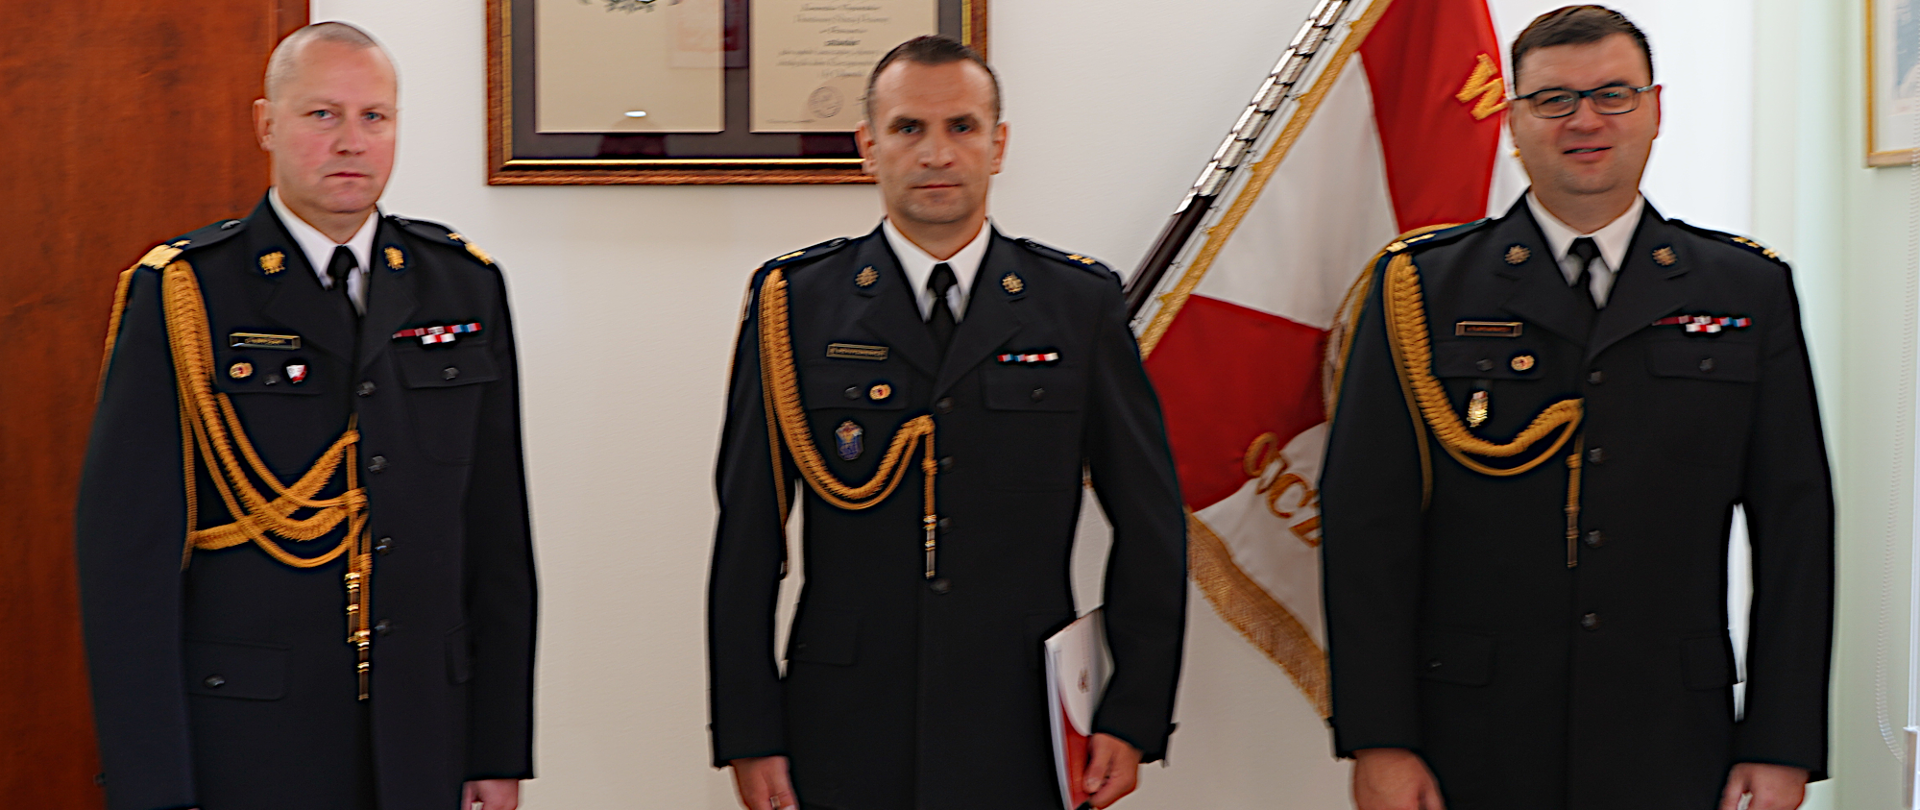 Trzech funkcjonariuszy stoi ubranych w mundury koloru grafitowego jeden w stopniu generalskim z niebieskim i lampasami za nim na ścianie sztandar koloru biało-czerwonego